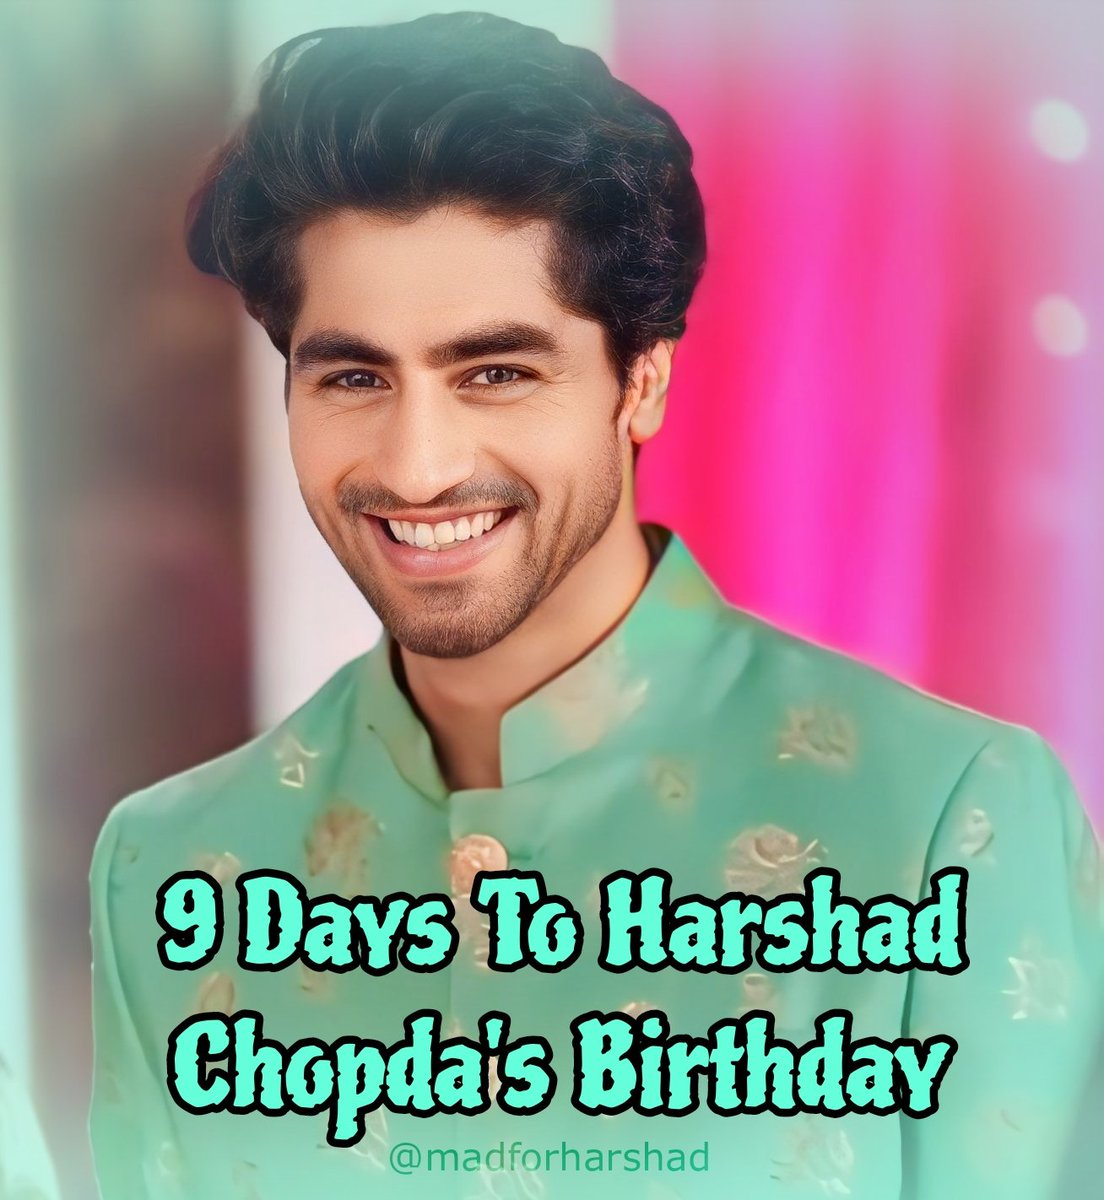 9 Days to #HarshadChopda 's Birthday